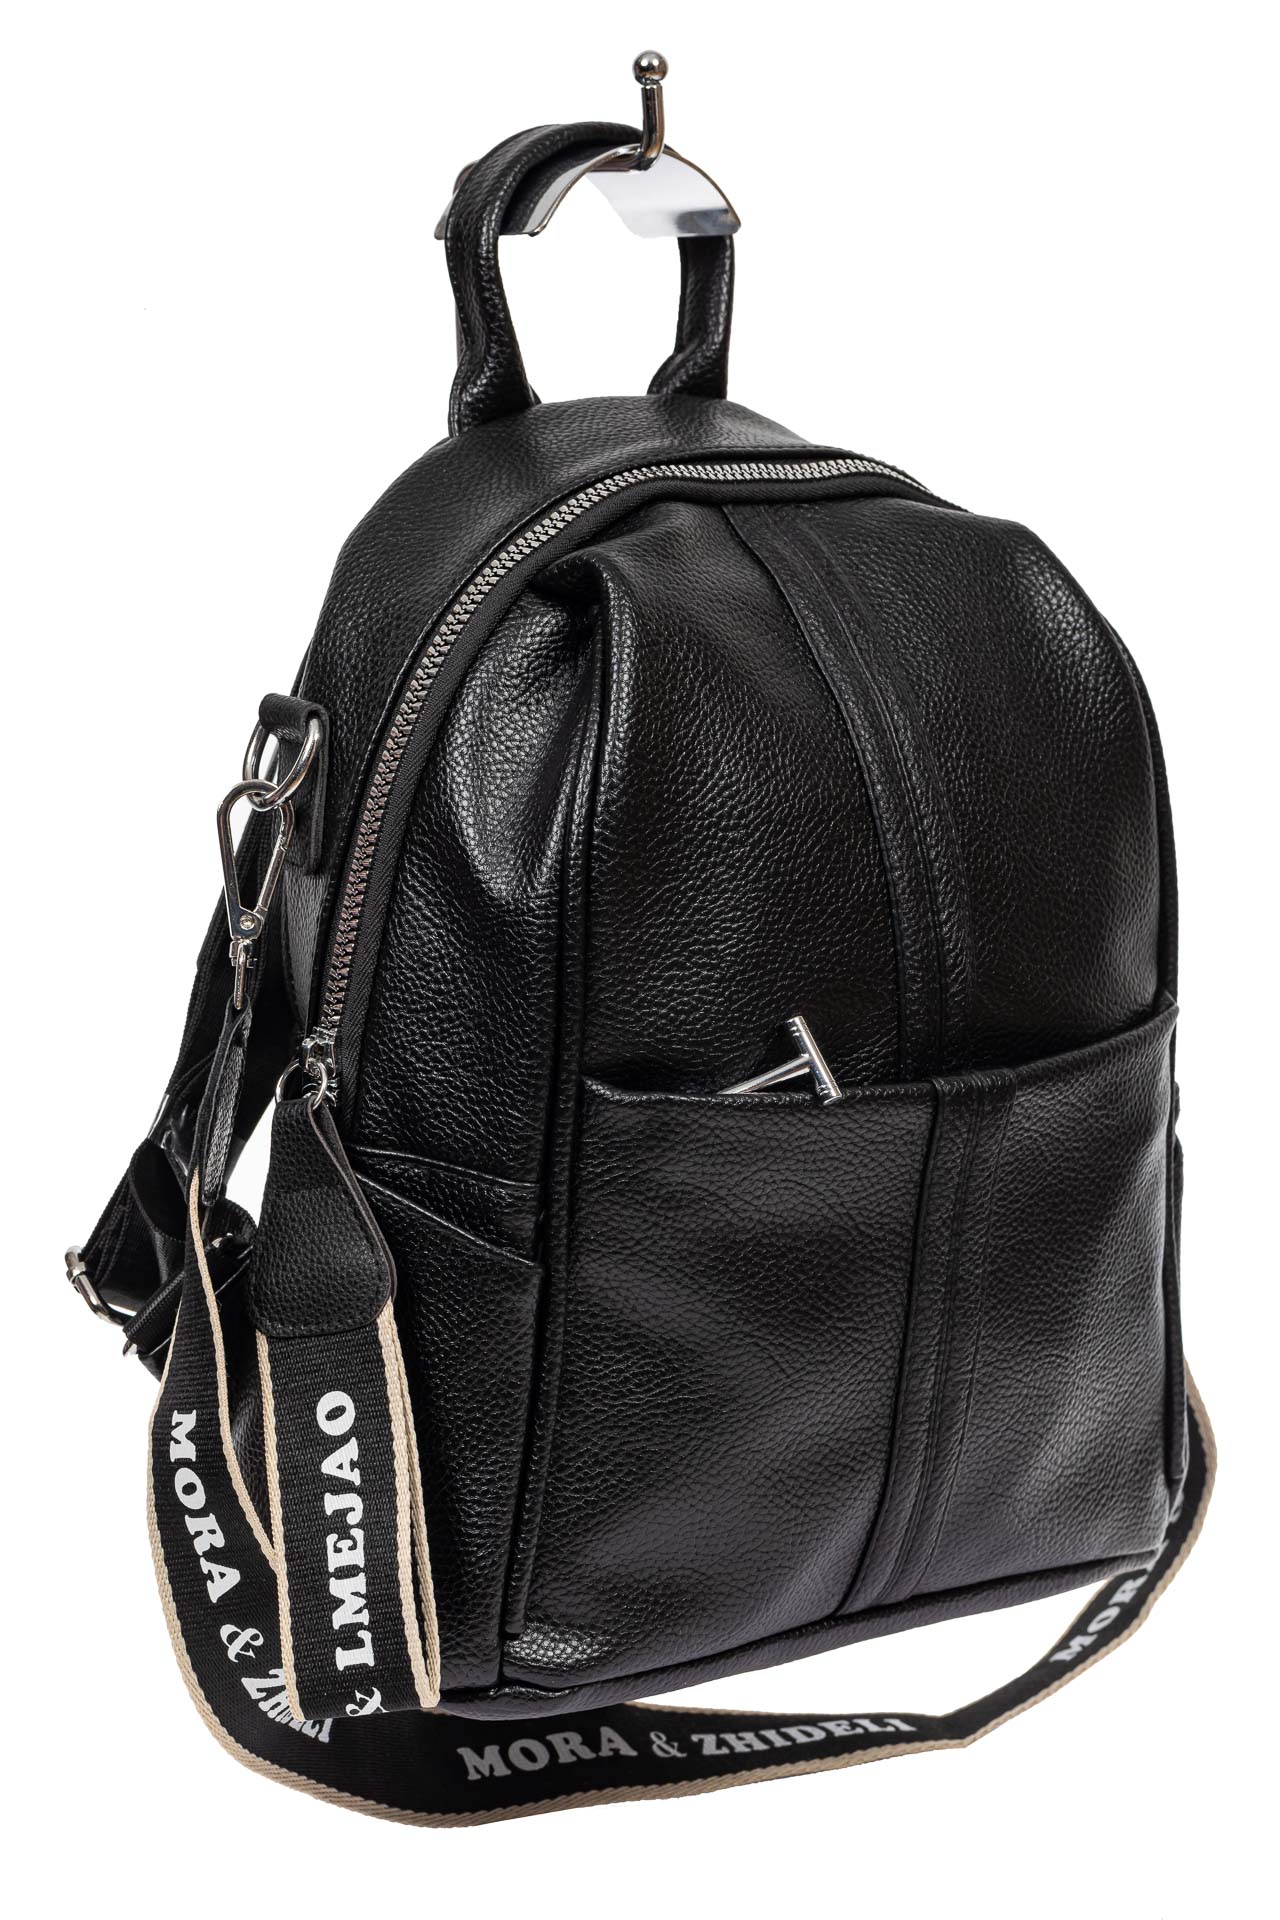 Сумка-рюкзак молодёжная из фактурной искусственной кожи, цвет чёрный